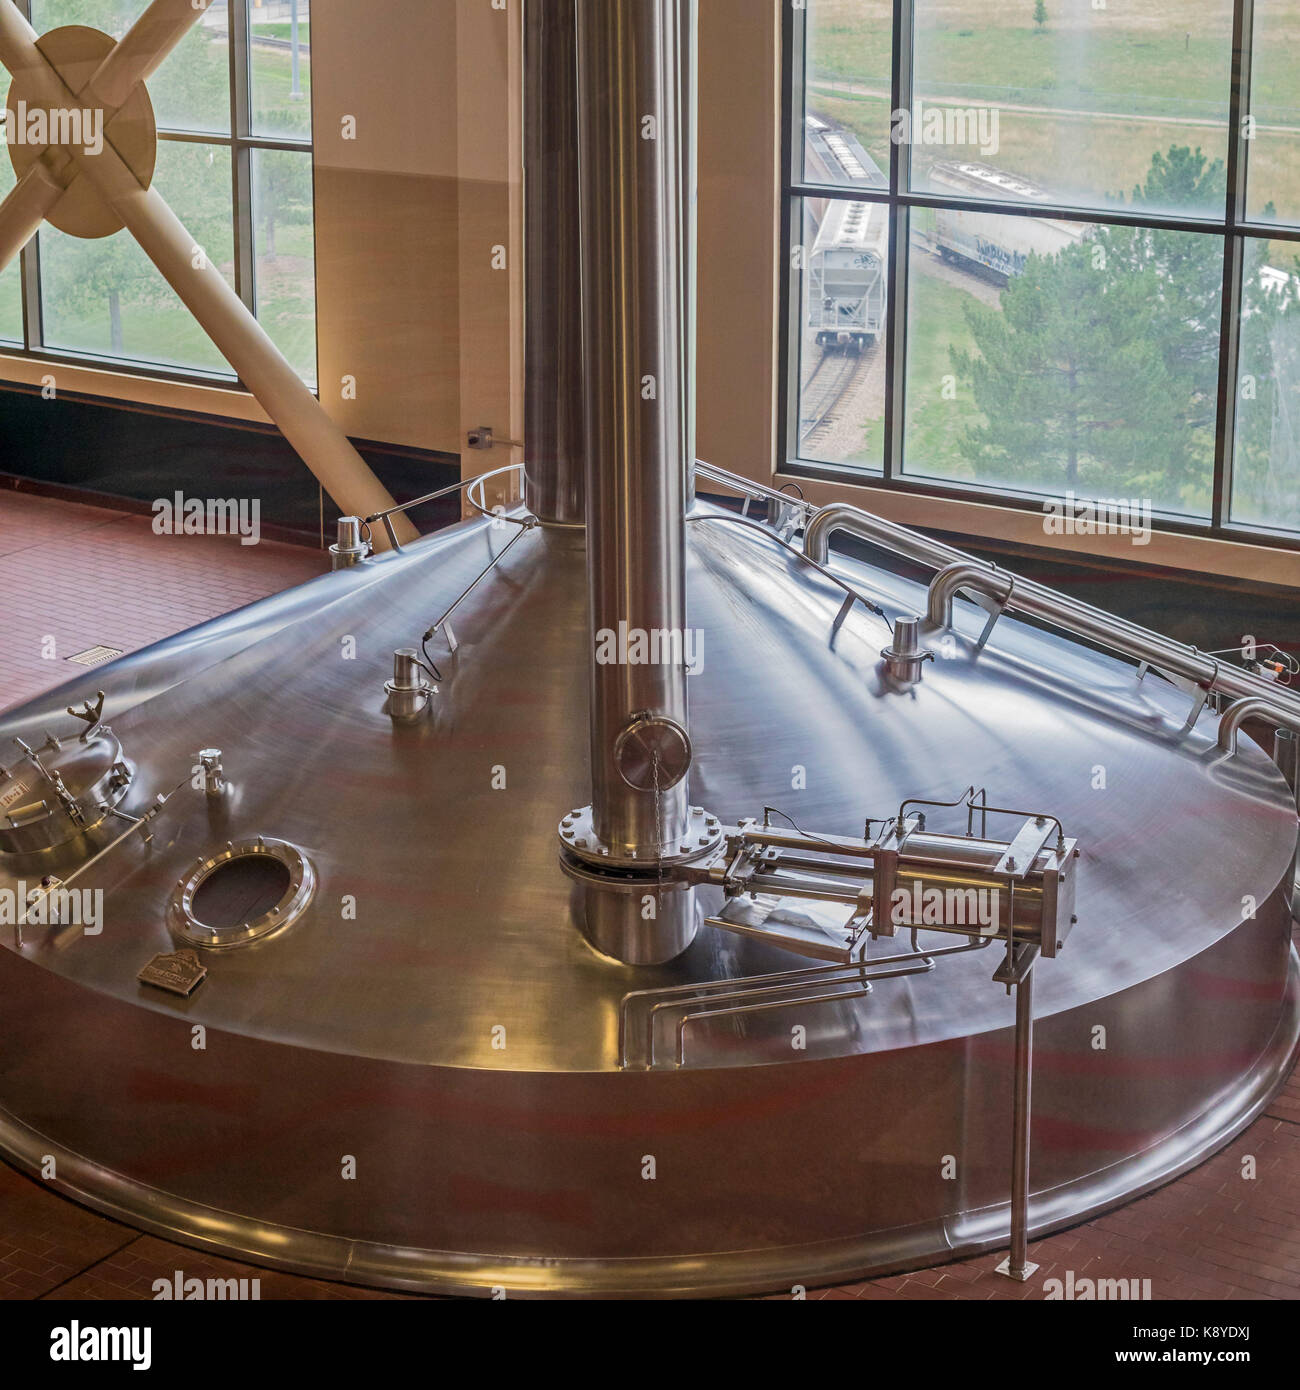 Fort Collins, colordo - un bollitore brew presso la anheuser-busch brewery. è uno dei 12 birrifici la società opera attraverso gli stati uniti. Foto Stock